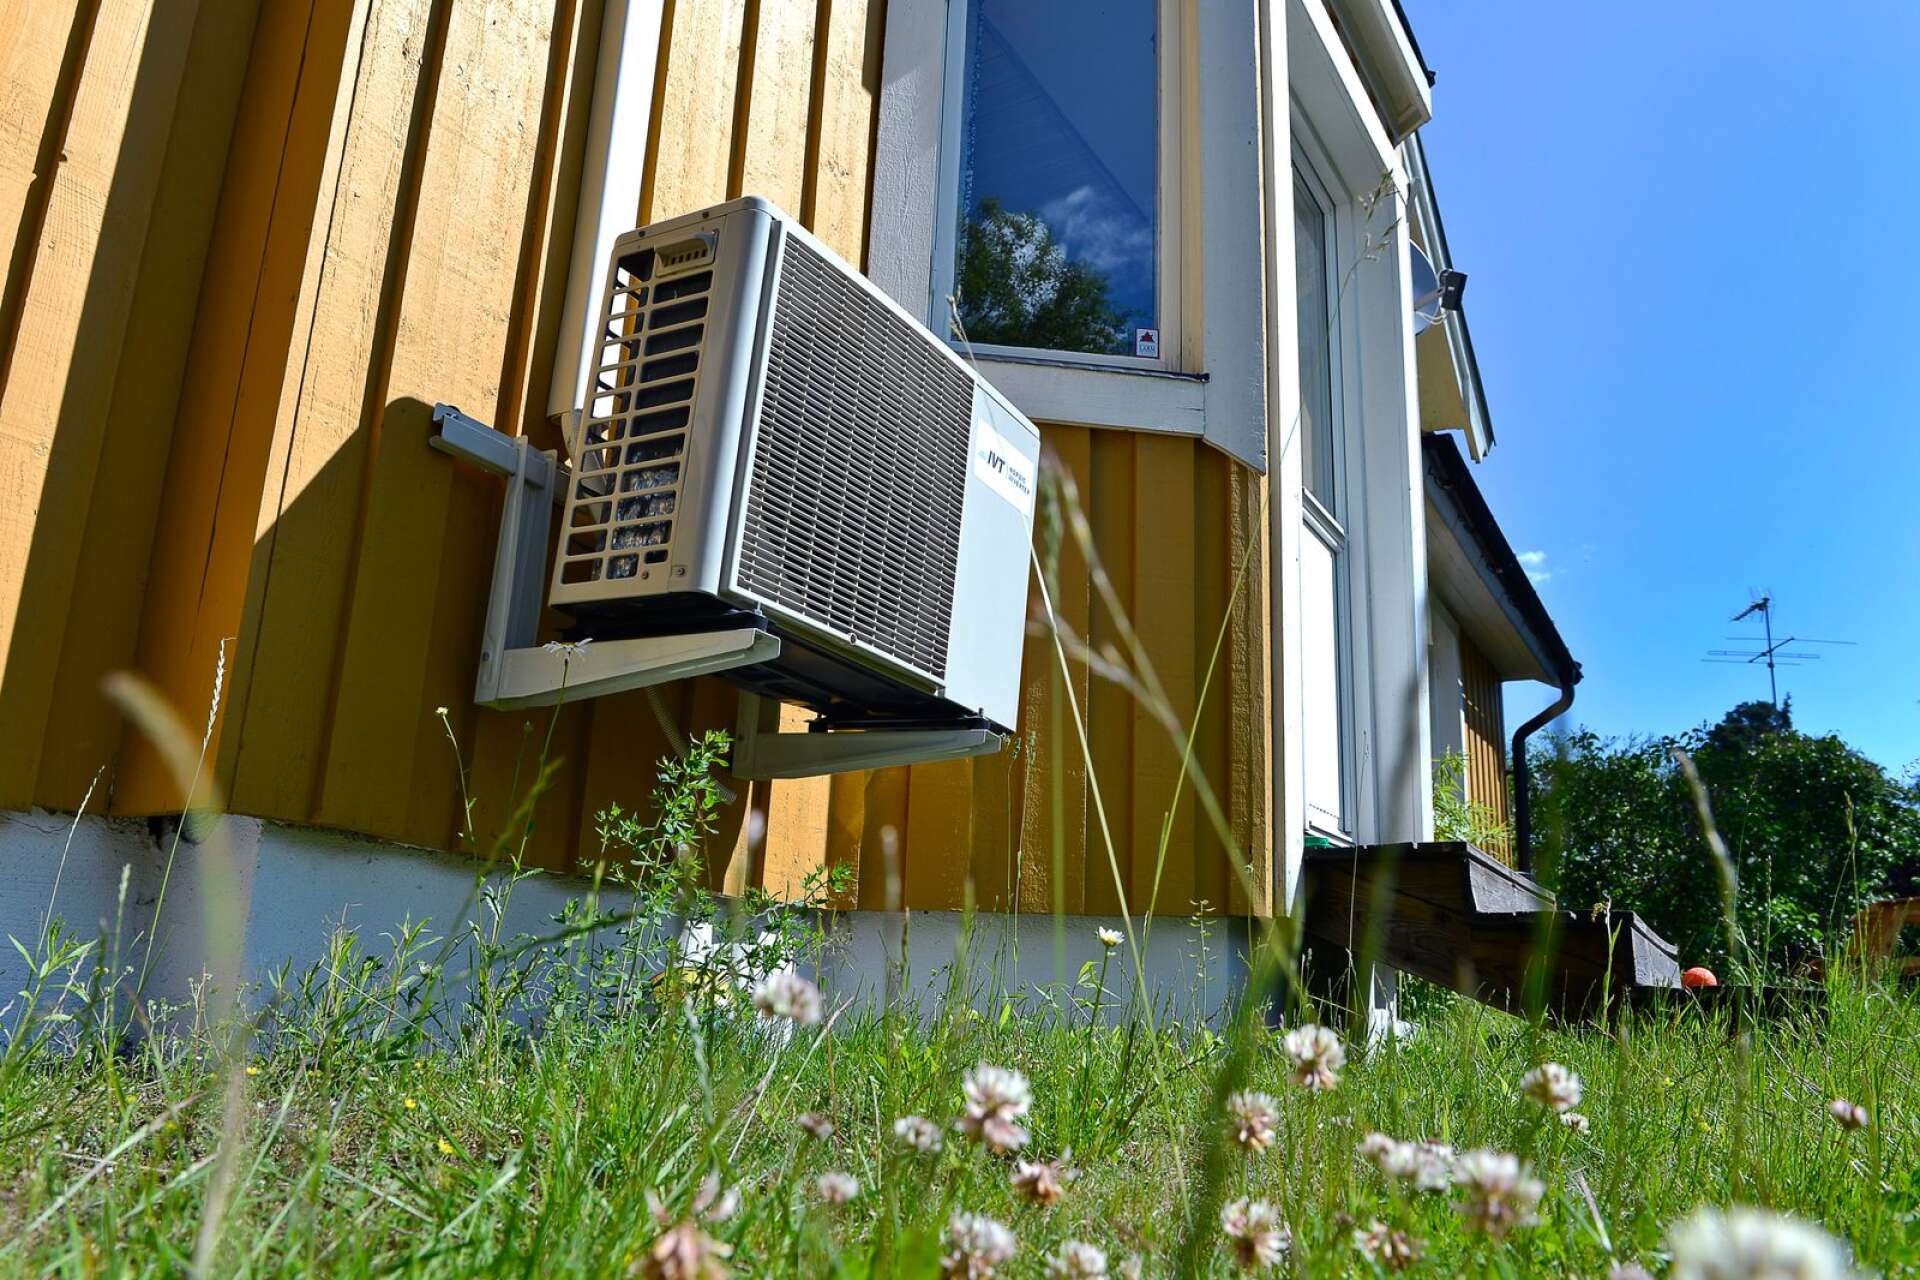 Luftvärmepumpen kan minska uppvärmningskostnaderna med hälften mot direktverkande el.